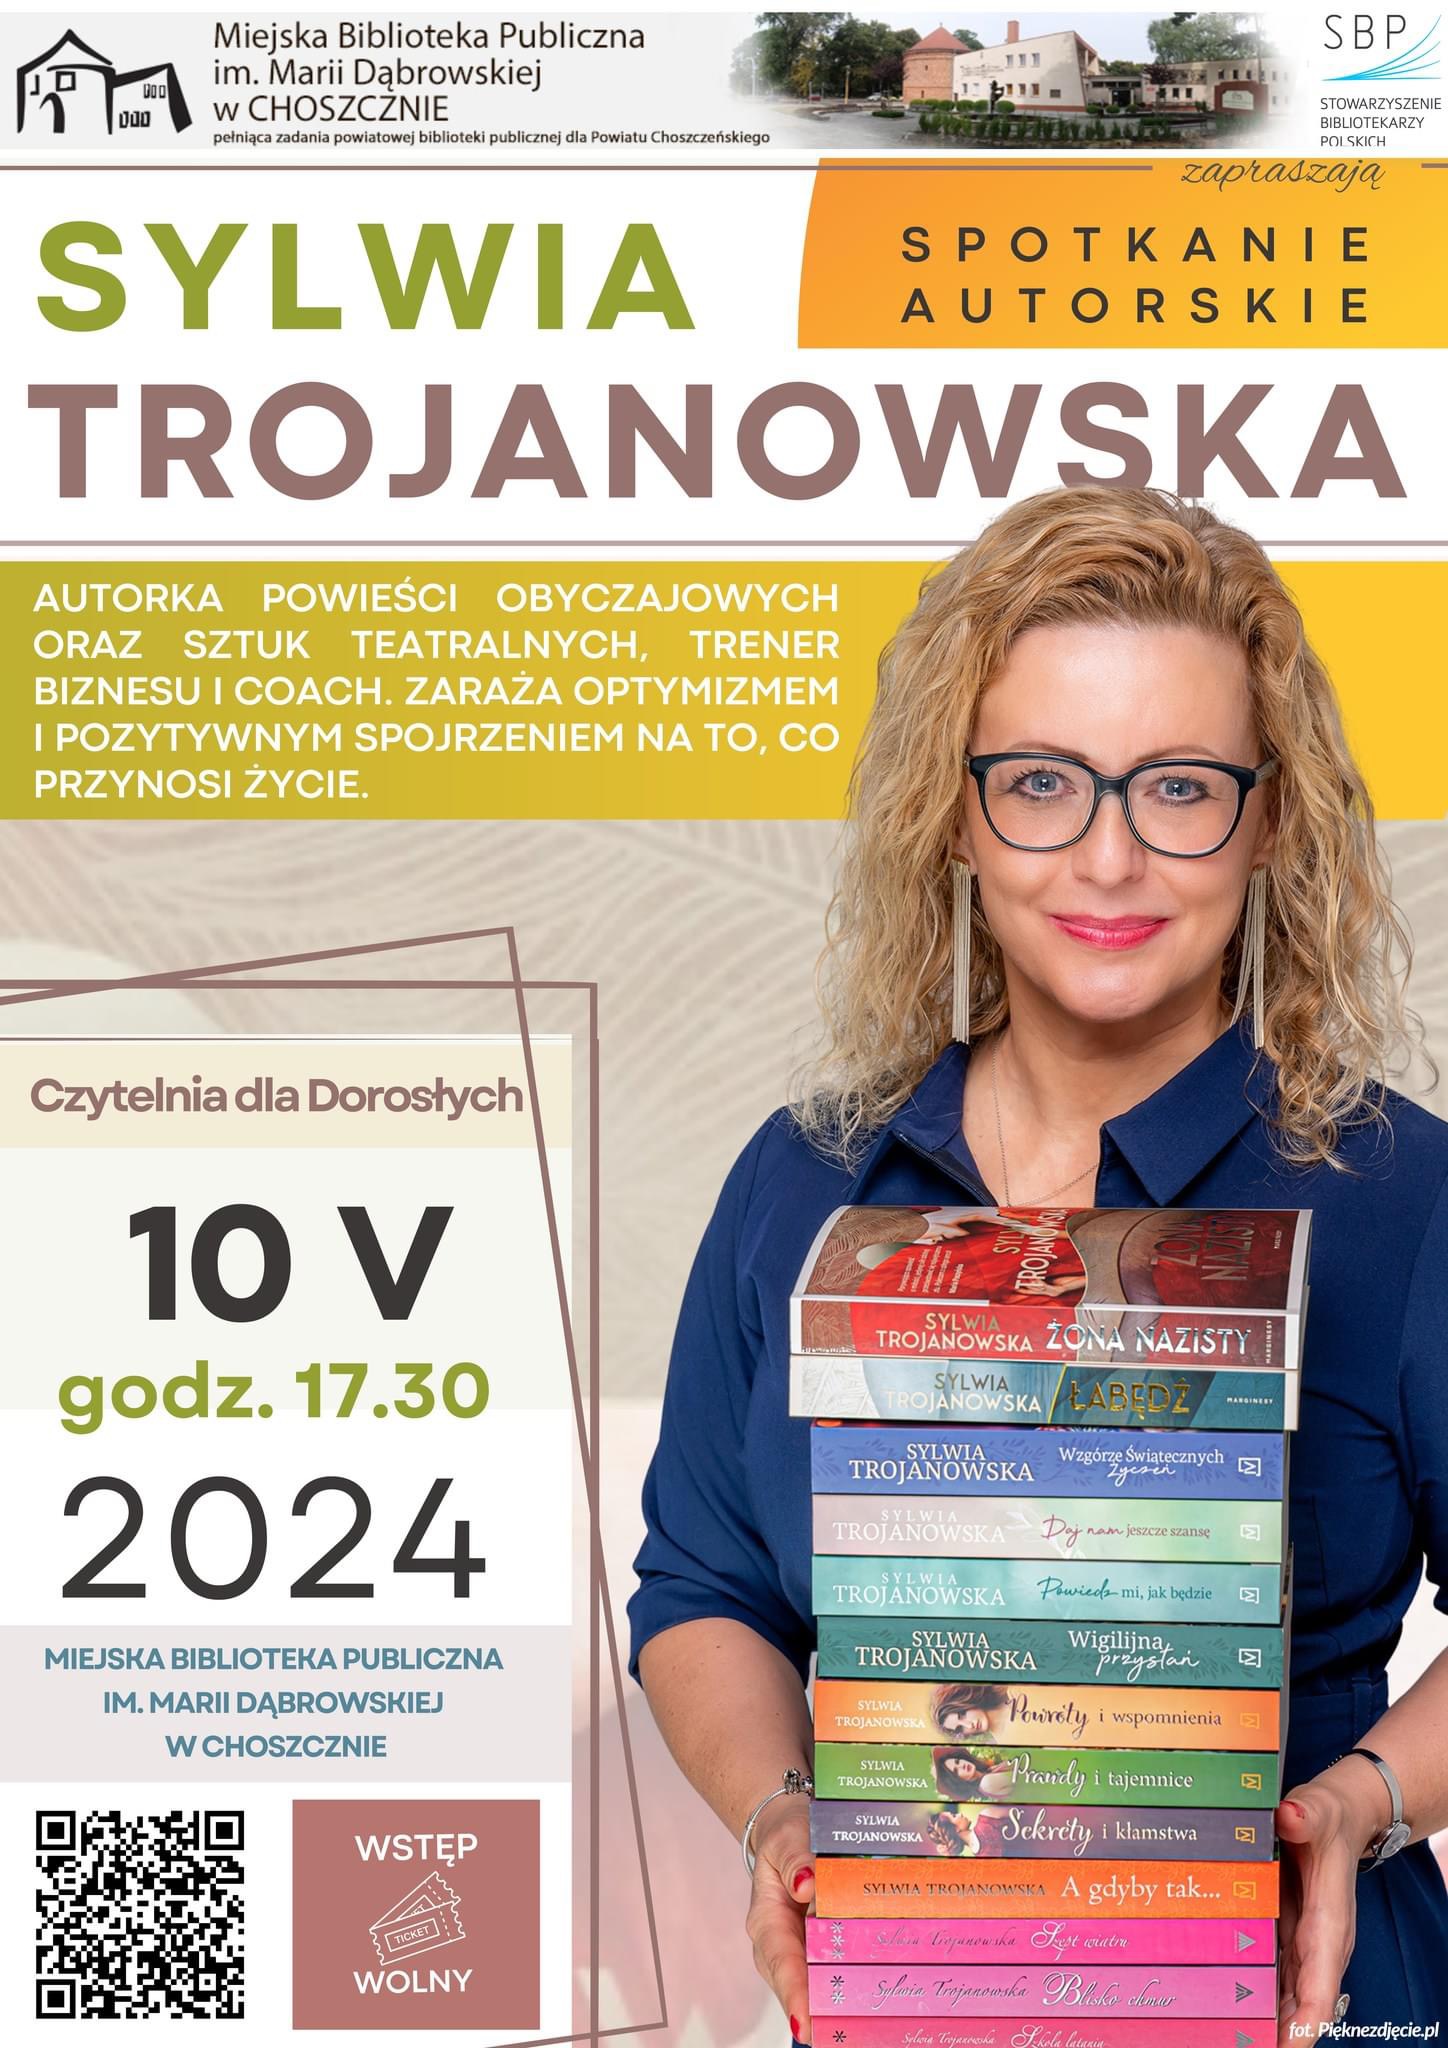 Sylwia Trojanowska - spotkanie autorskie